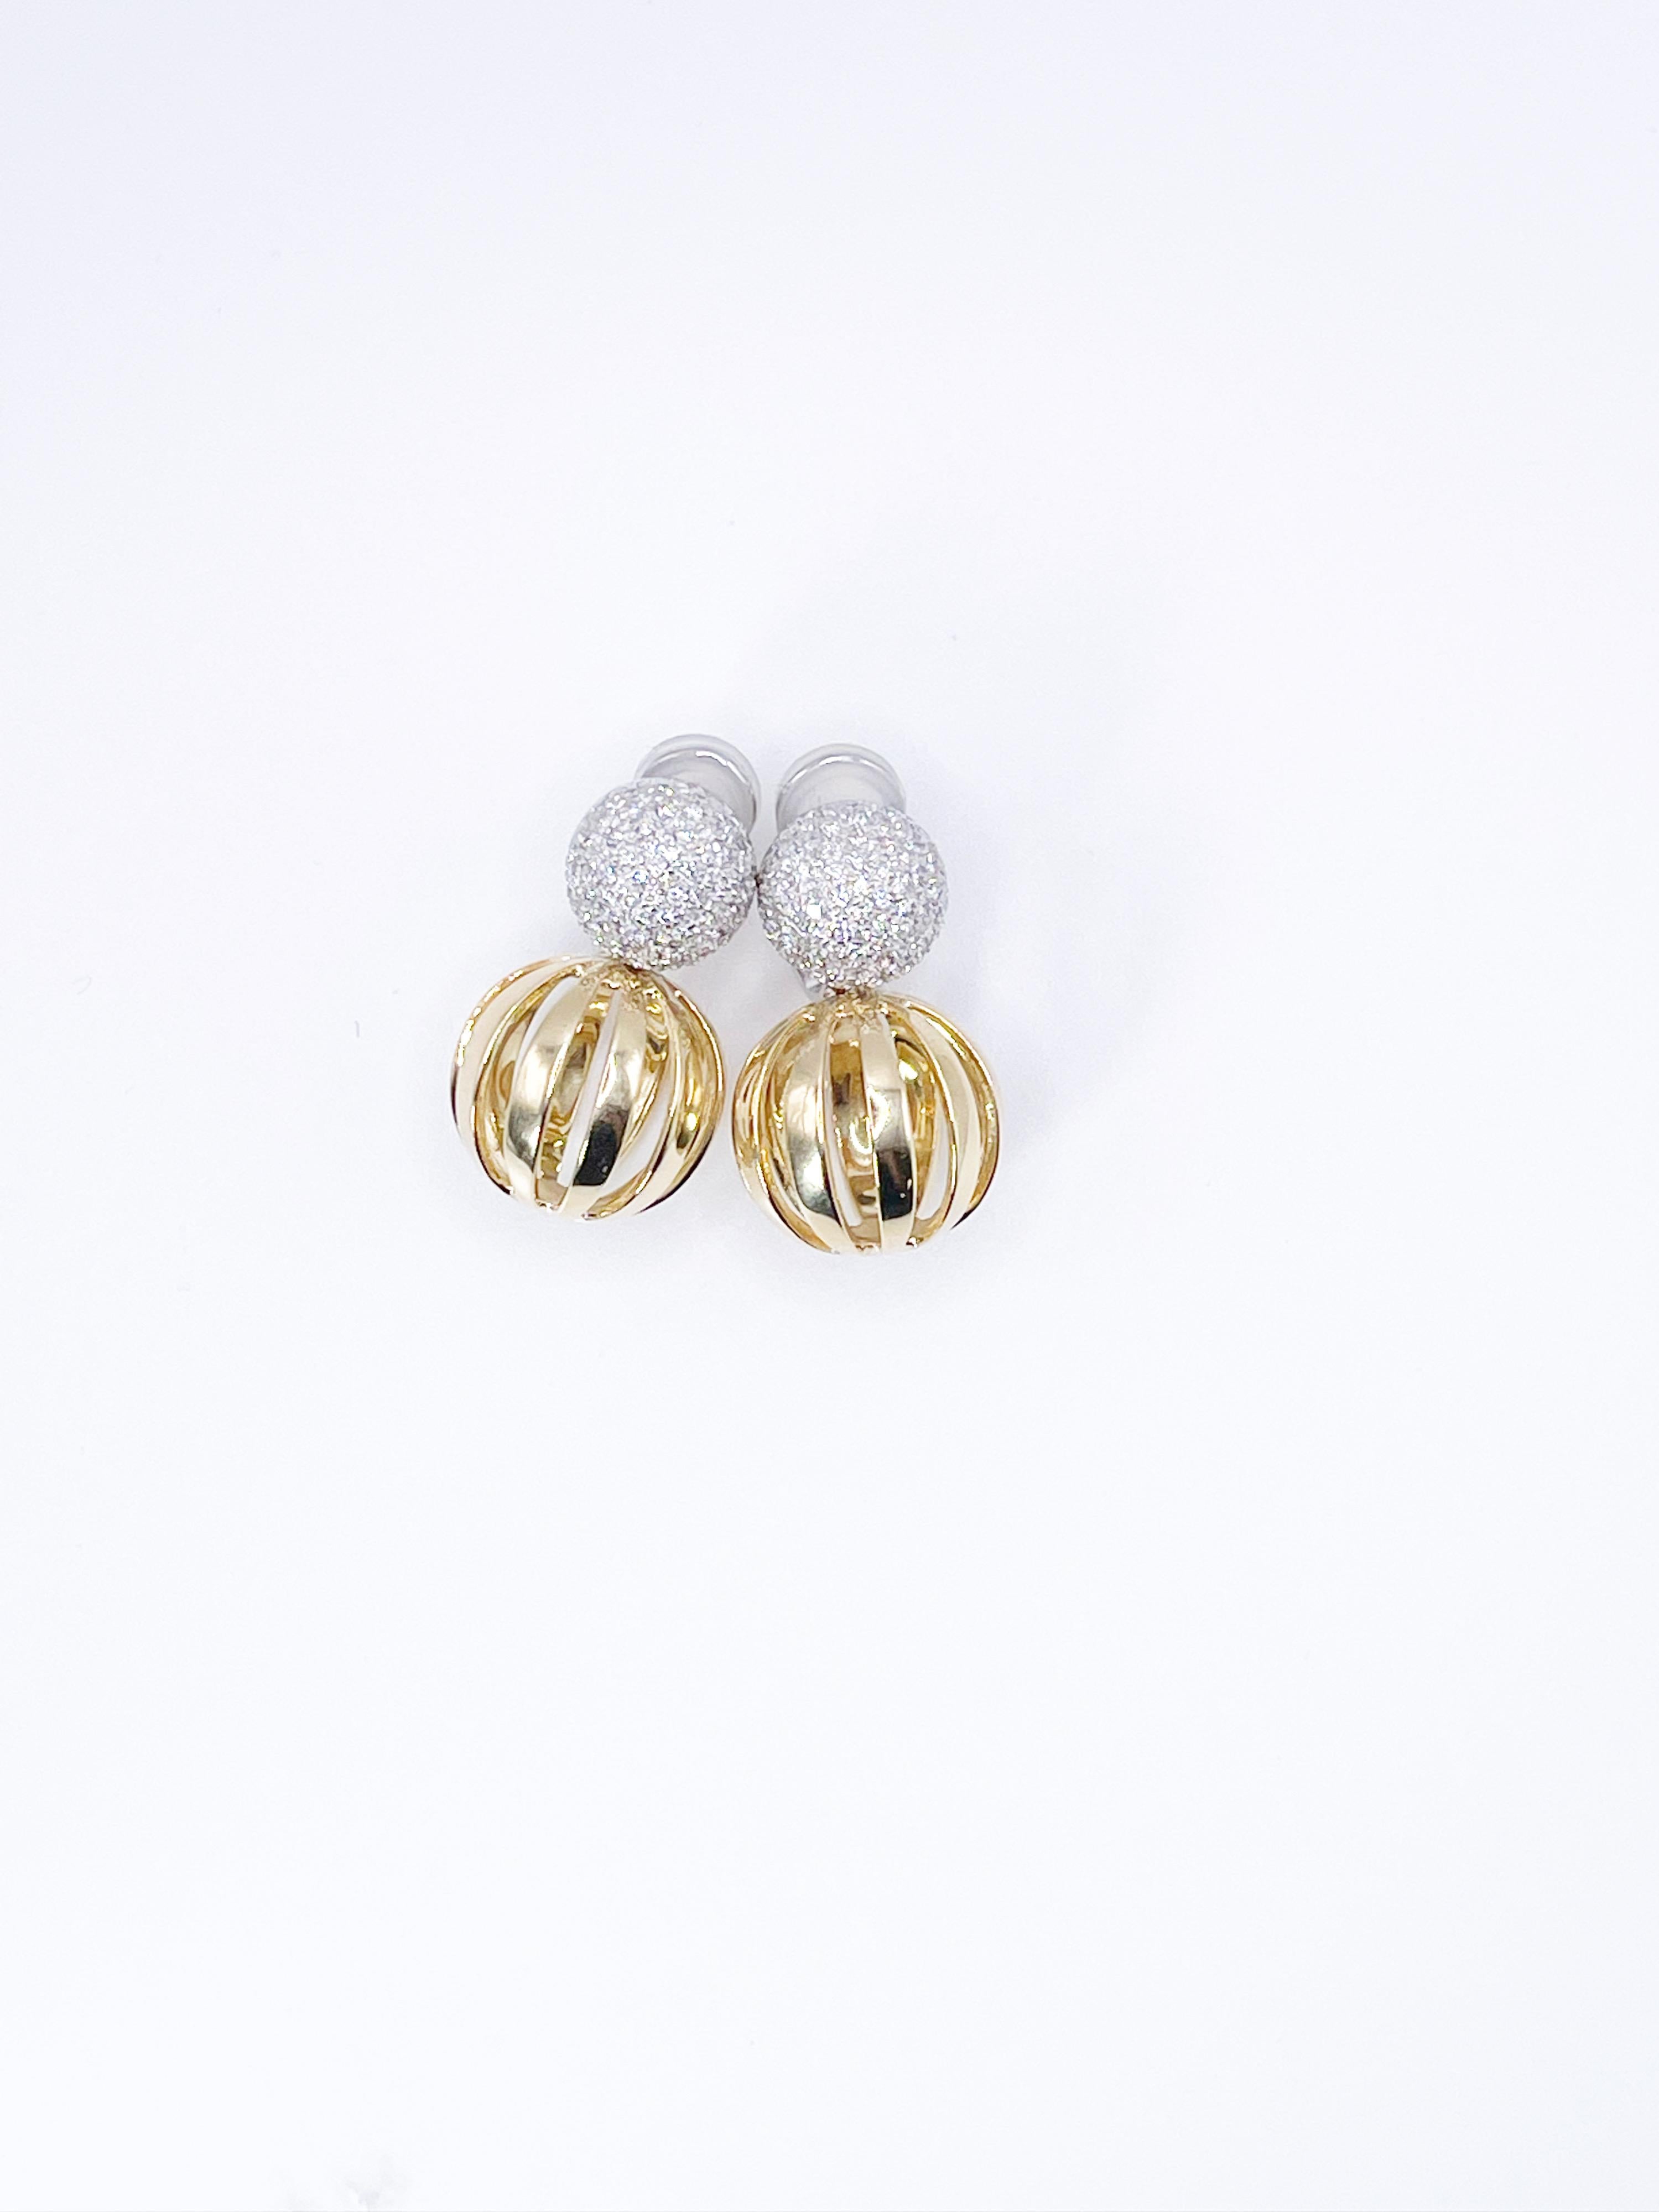 Atemberaubende Antonini Diamant-Ohrringe mit einem Gewicht von 1,58 ct. aus 18 Kt. Weiß- und Gelbgold, natürliche VS-Diamanten und handpolierte Gelbgoldkreise ergänzen jedes Outfit. 
Mittelstein: natürliche Diamanten
KARAT: 1.58CT
KLARHEIT: